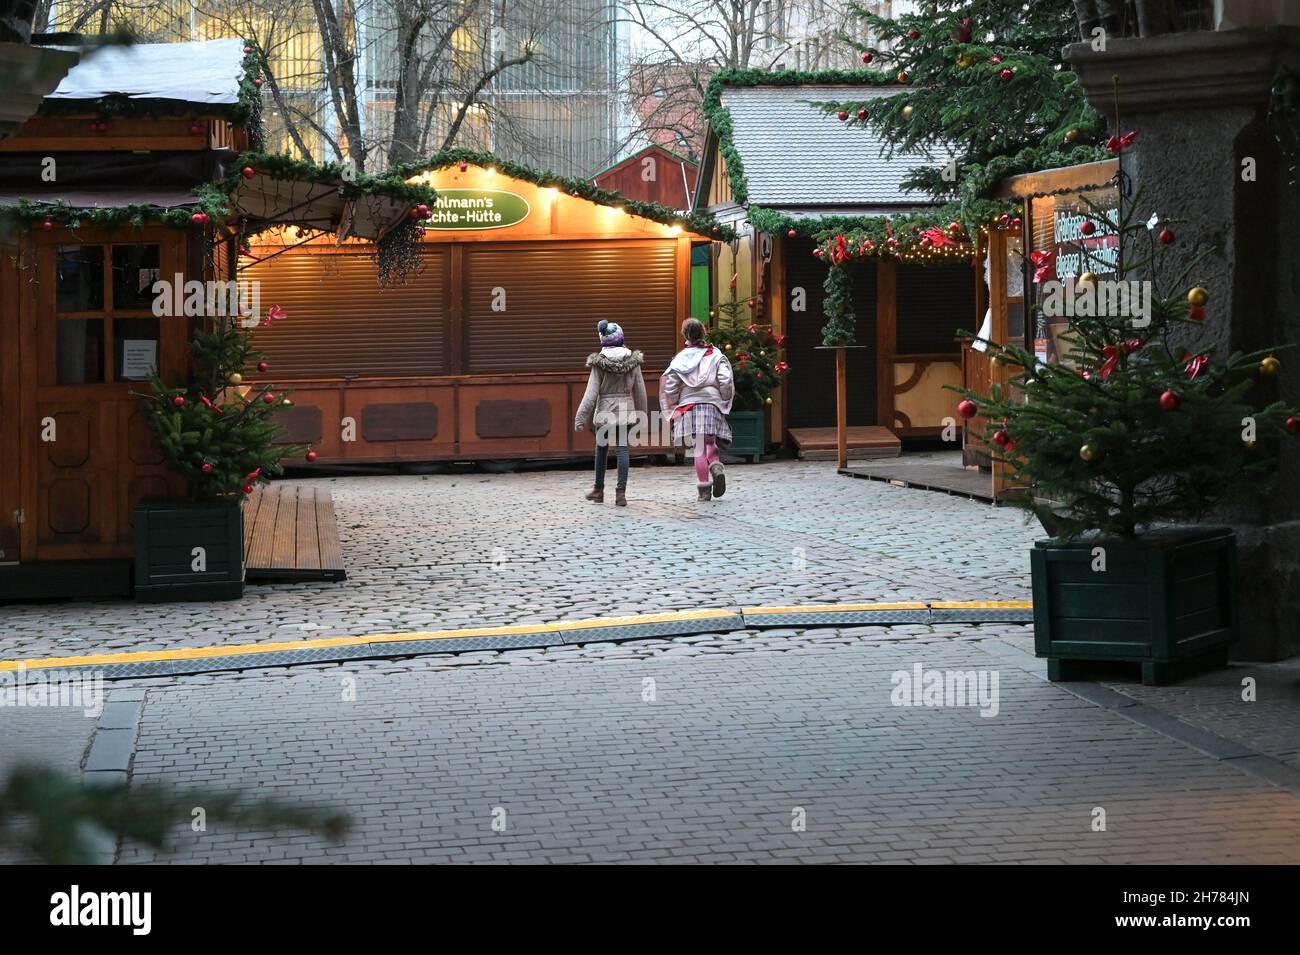 Lubeck, Alemania, 19 de noviembre de 2021: Dos niños de atrás caminando por el mercado cerrado de Navidad, esperando que se abra a pesar del pand del coronavirus Foto de stock